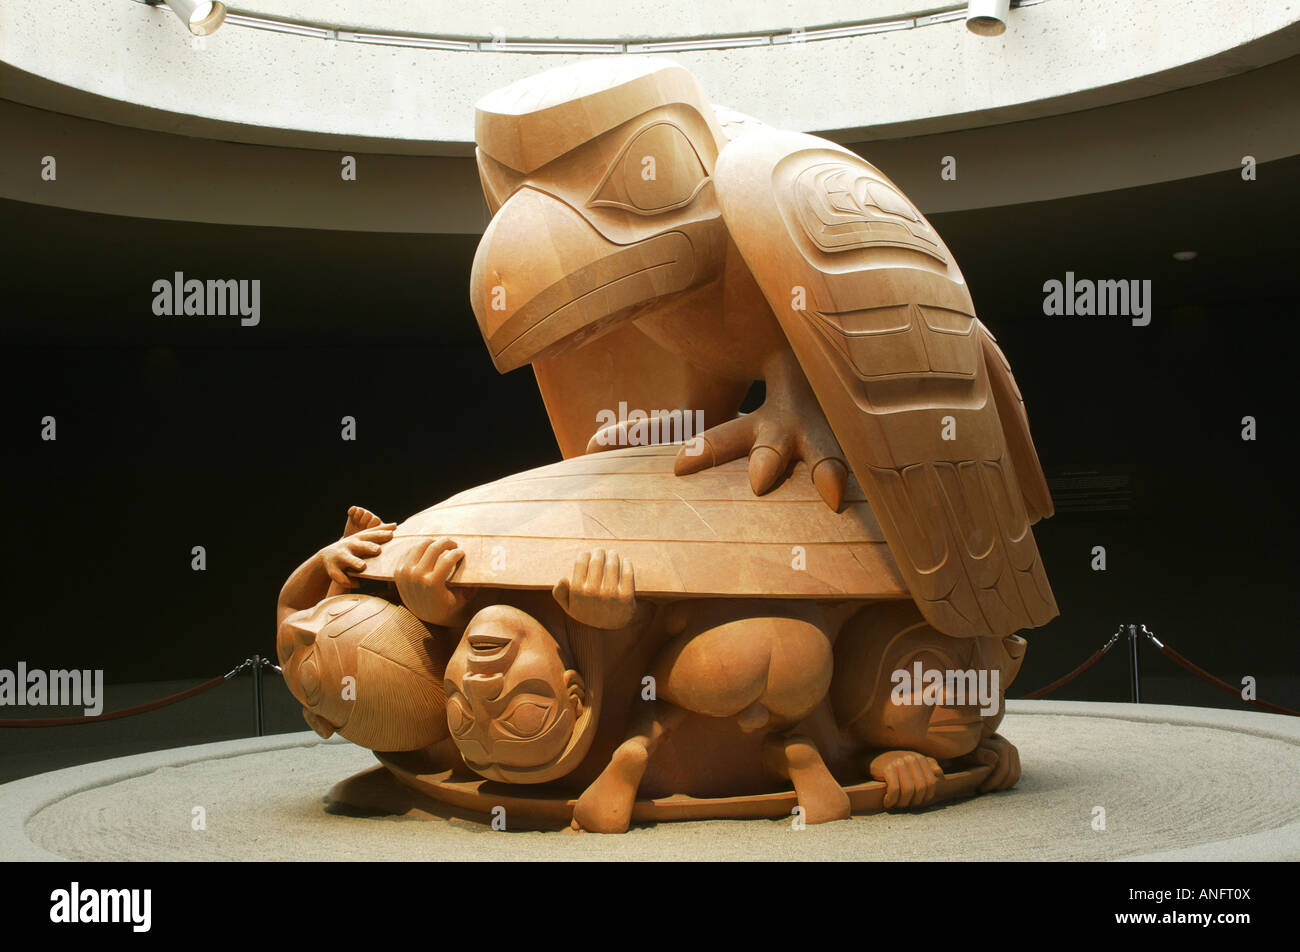 La sculpture sur bois 'Silent' haut-parleurs par Bill Reid au Musée d'anthropologie, l'Université de la Colombie-Britannique, Vancouver, Colombie Britannique Banque D'Images